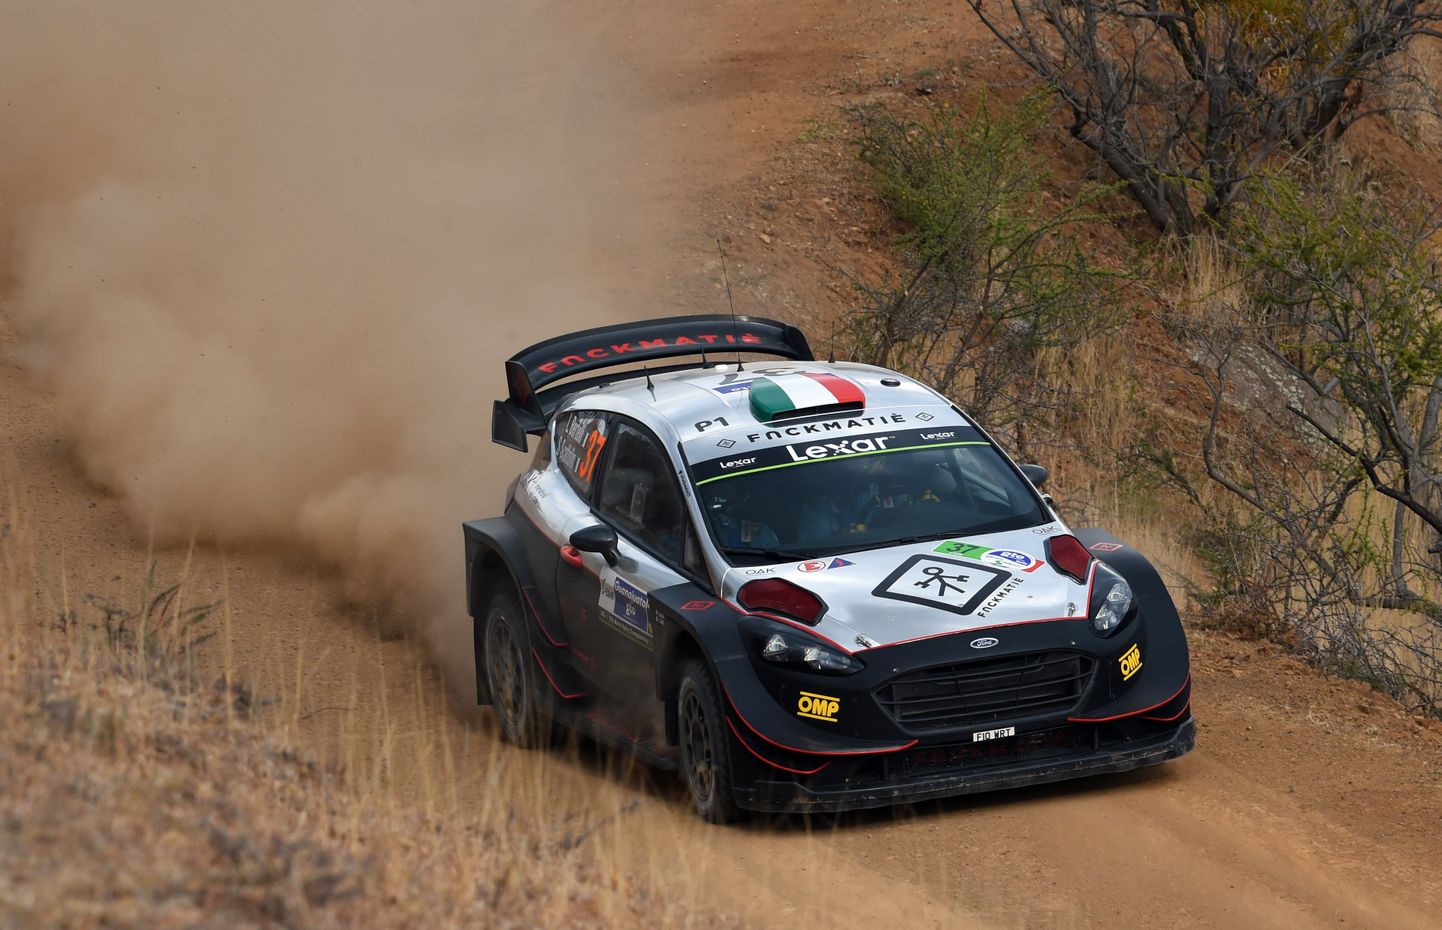 Lorenzo Bertelli ja Simone Scattolin on üks väheseid rallipaare, kes seni oma kulu ja kirjadega uue WRC-auto MM-sarjas rajale toonud. Fotol kihutatakse mullusel Mehhiko rallil.